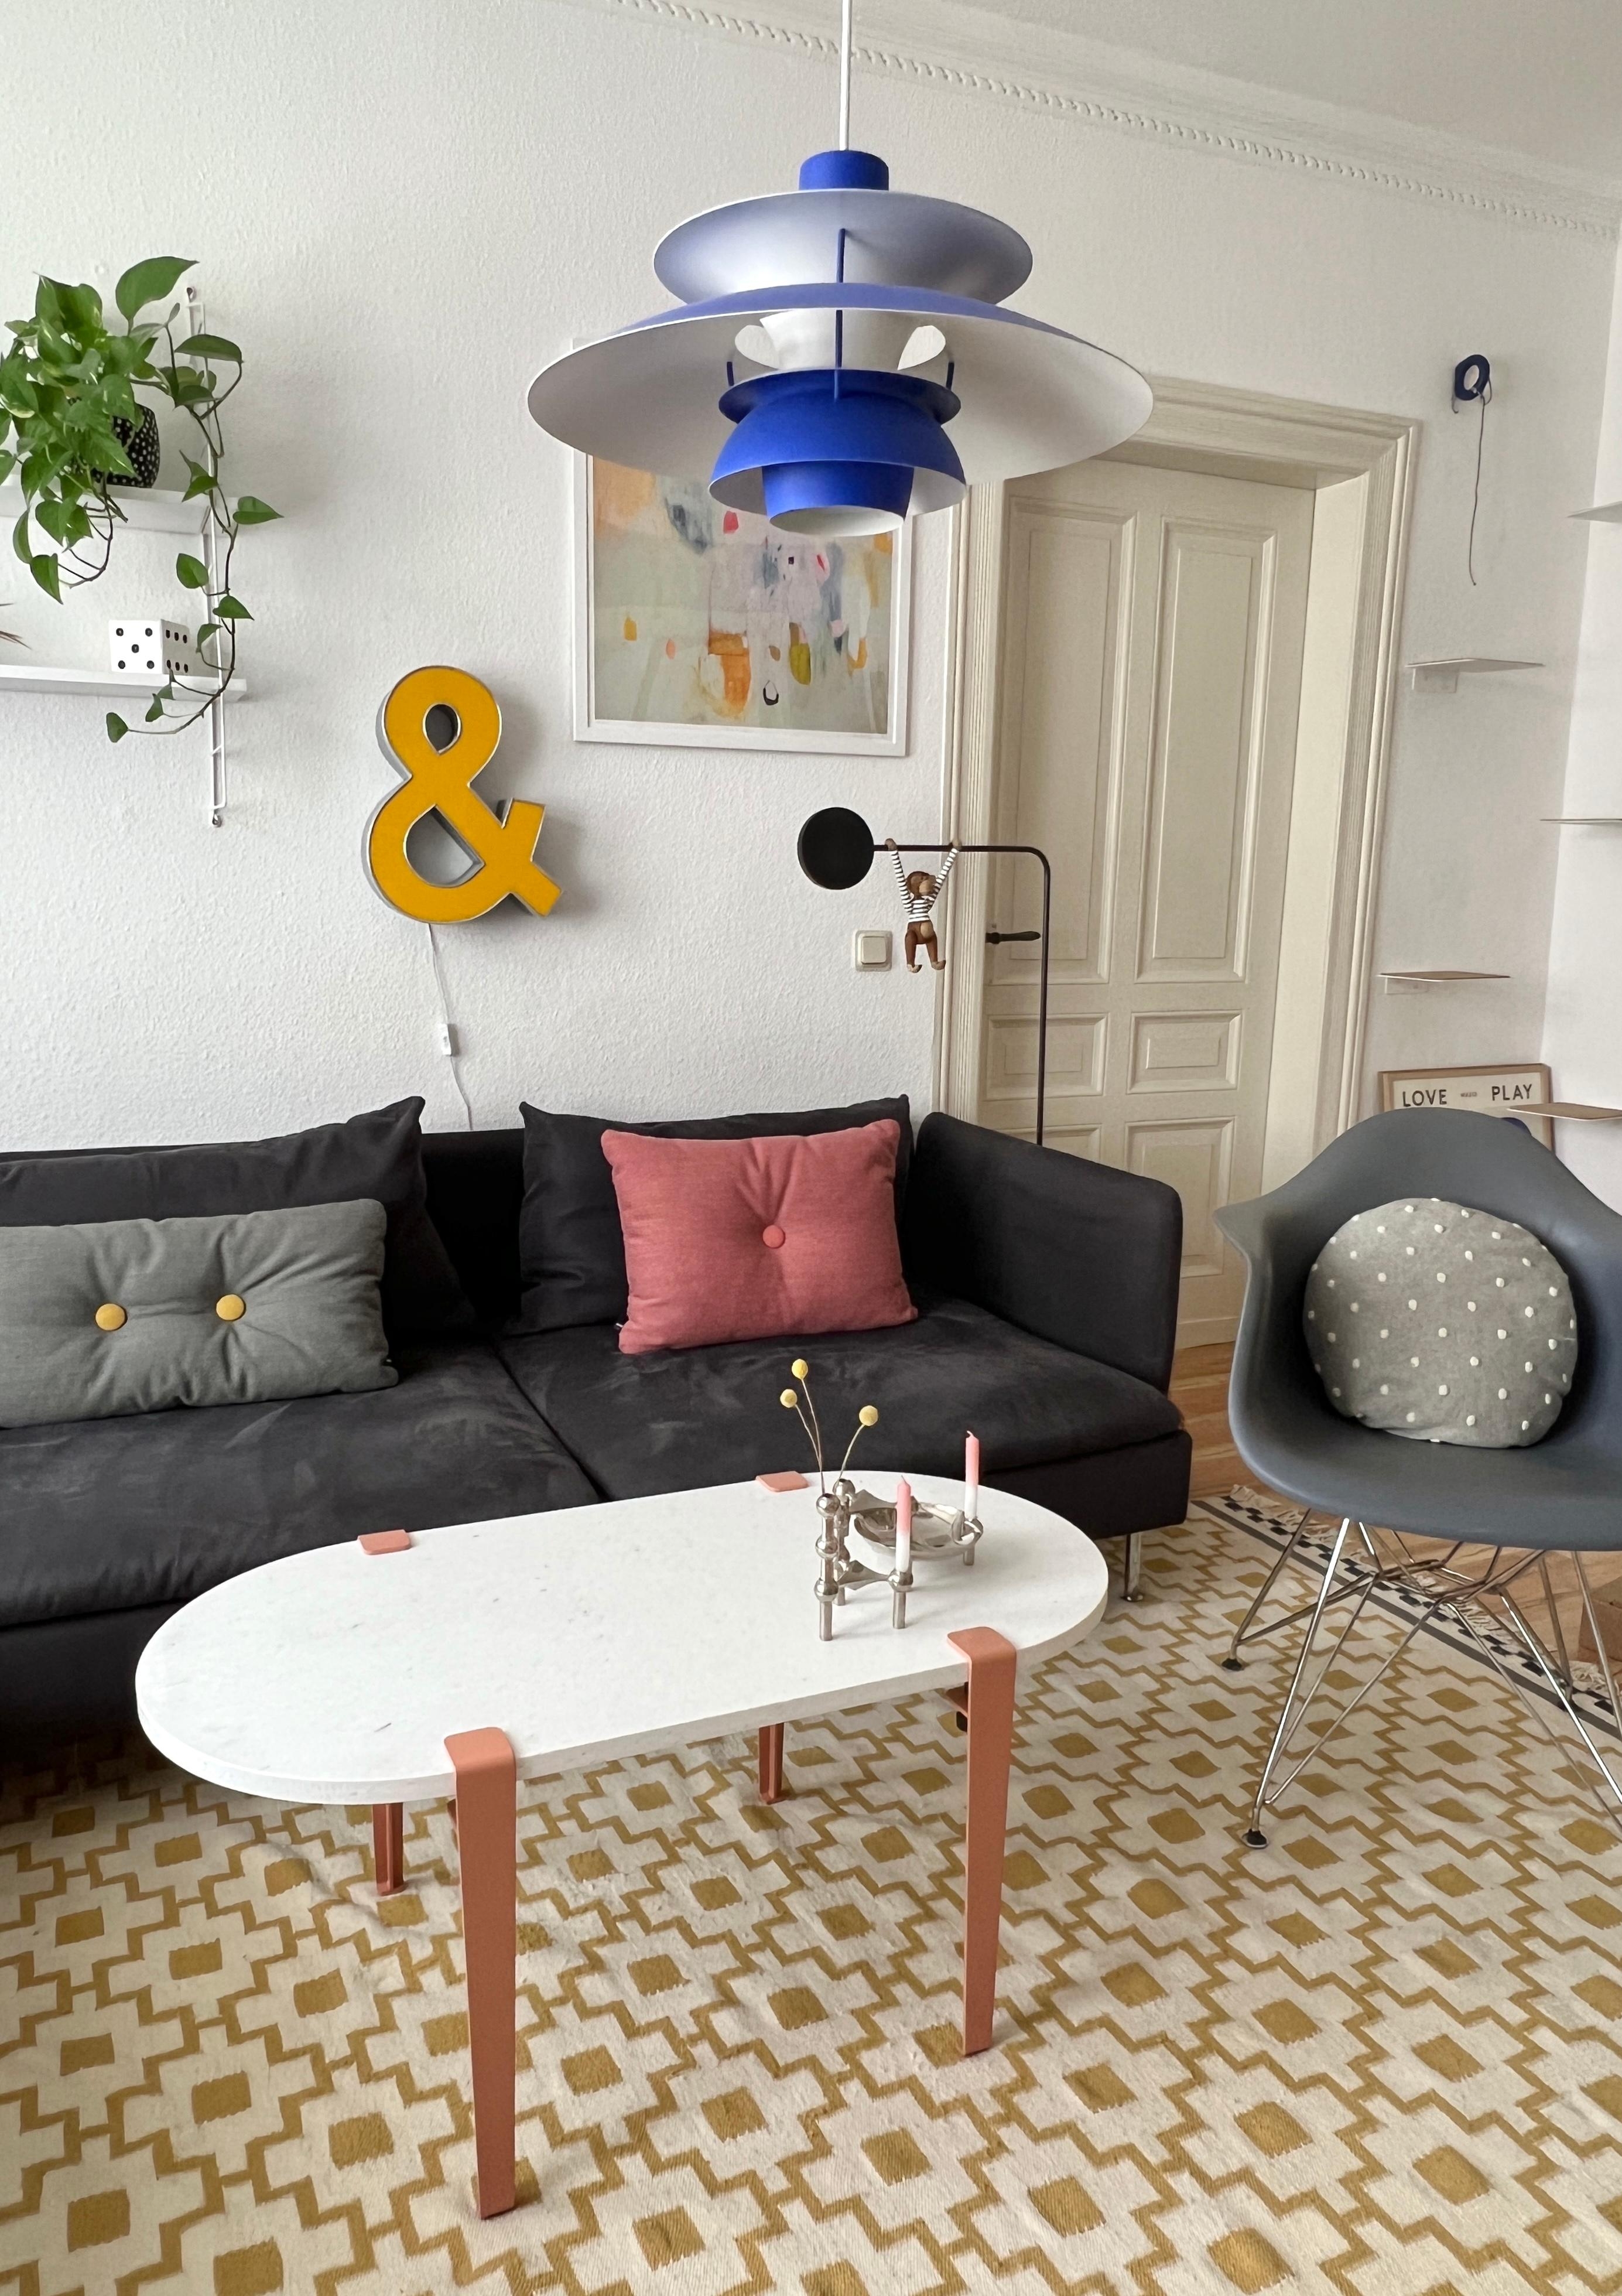 #interior #interiordesign #couchliebt #wohnzimmer #couchtisch #tiptoe #ph5 #söderhamn #vintage #blau